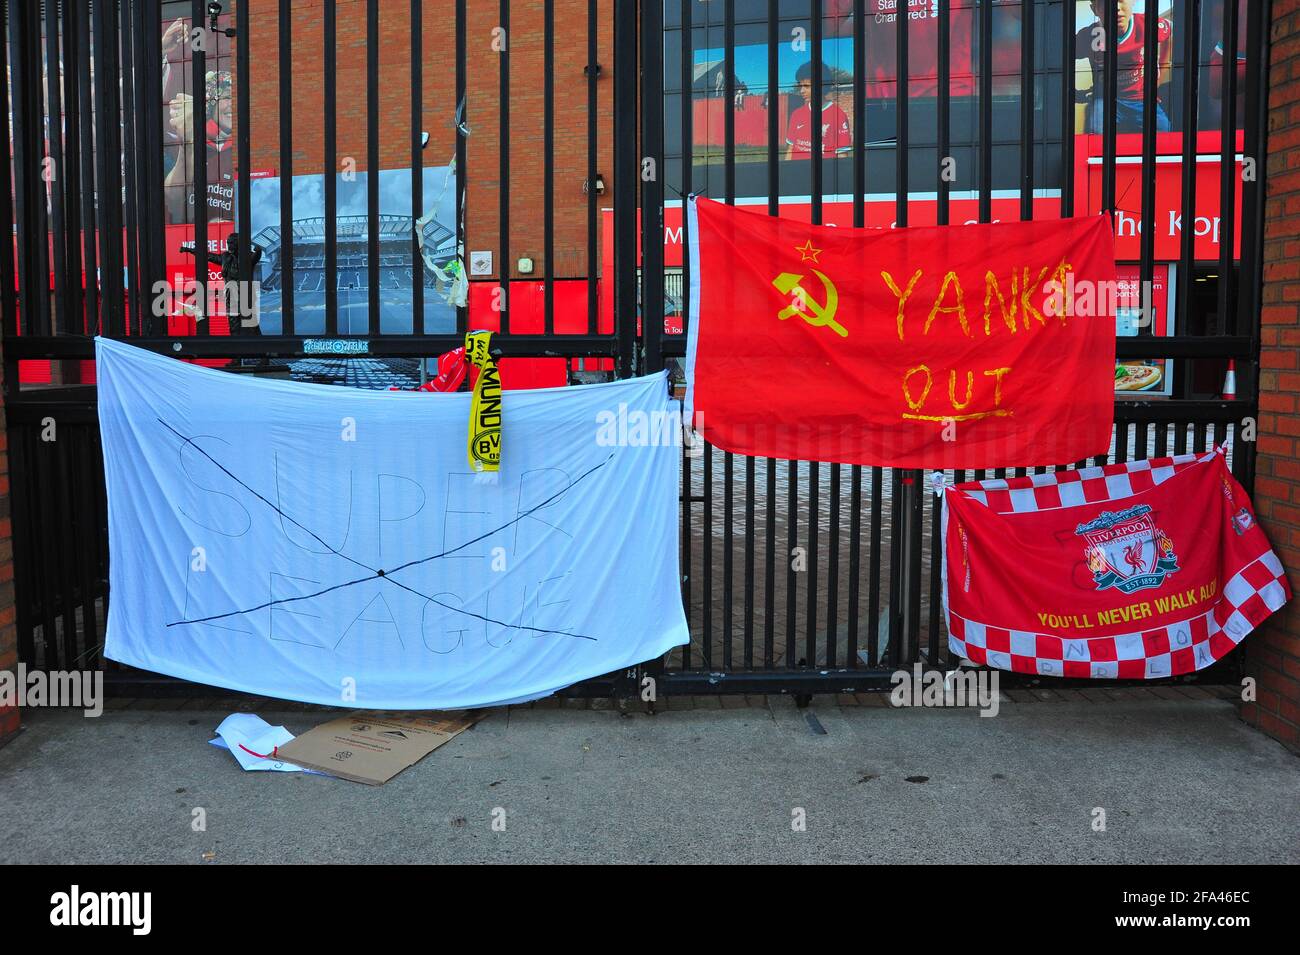 Bannières attachées à la clôture et aux portes du Liverpool football Club par des fans protestant contre l'intention des clubs de rejoindre une Super League européenne. Banque D'Images